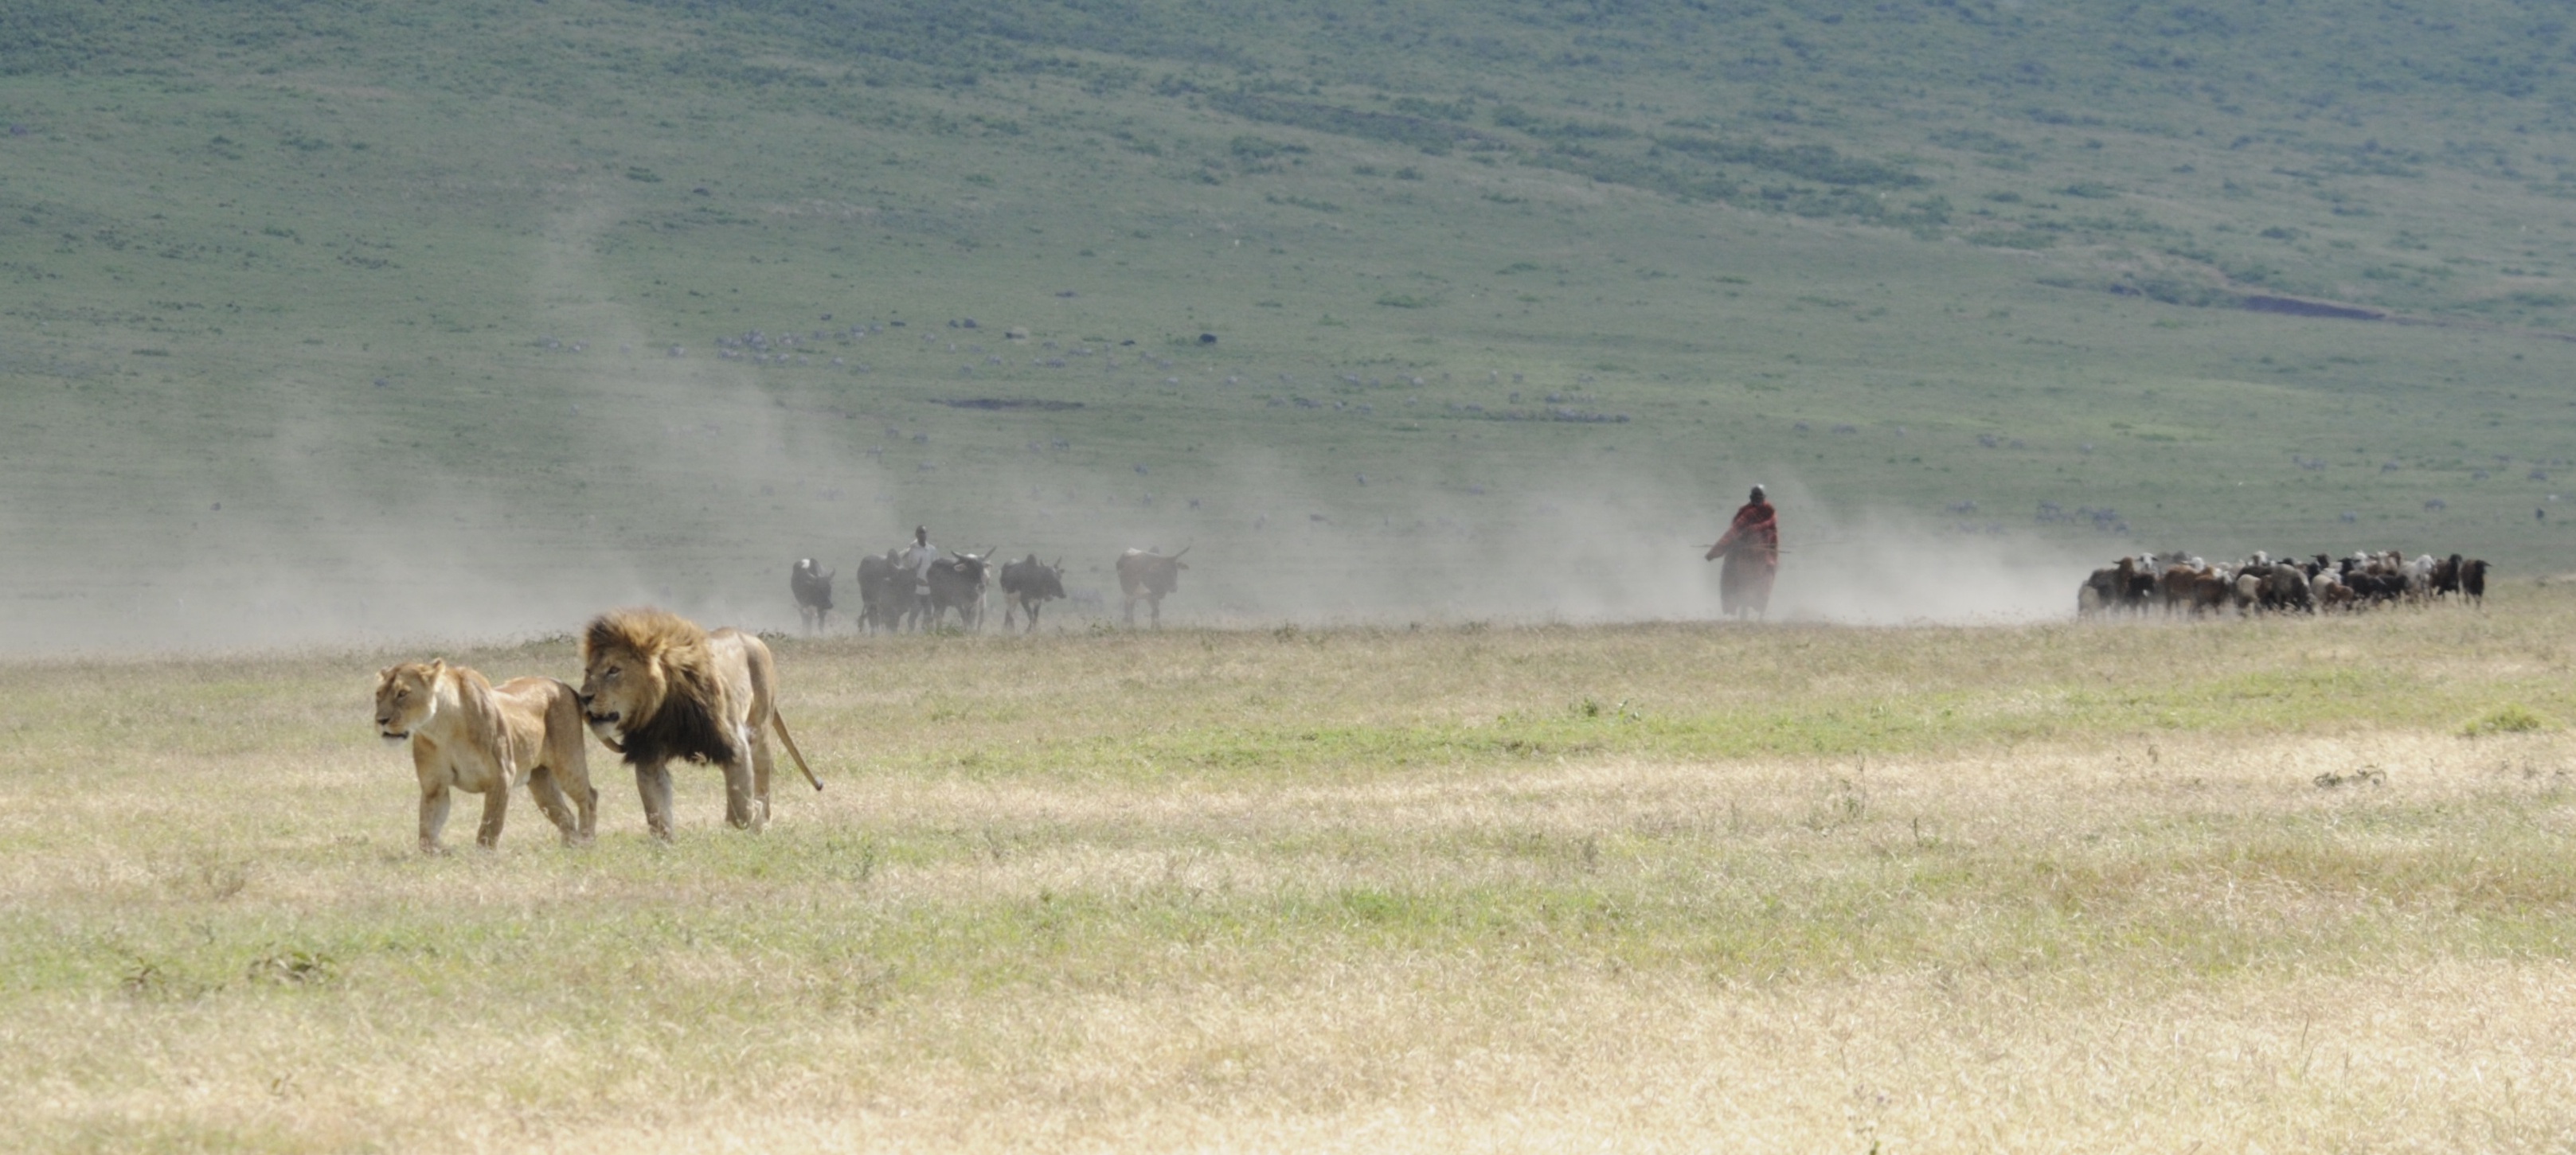 Inside Ngorongoro Crater